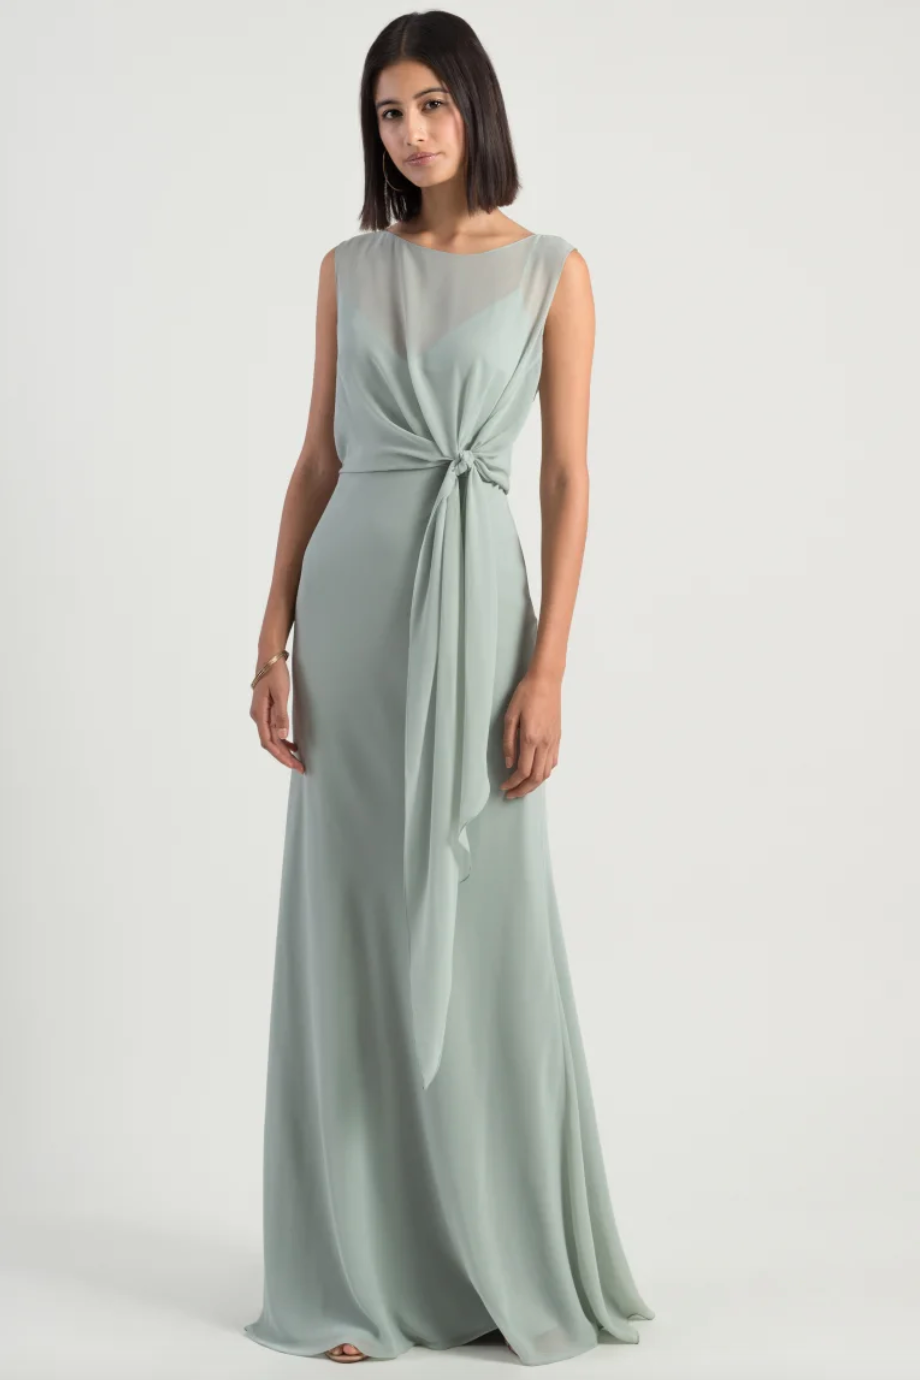 Elegant chiffon sage green; pastel bridesmaids dress